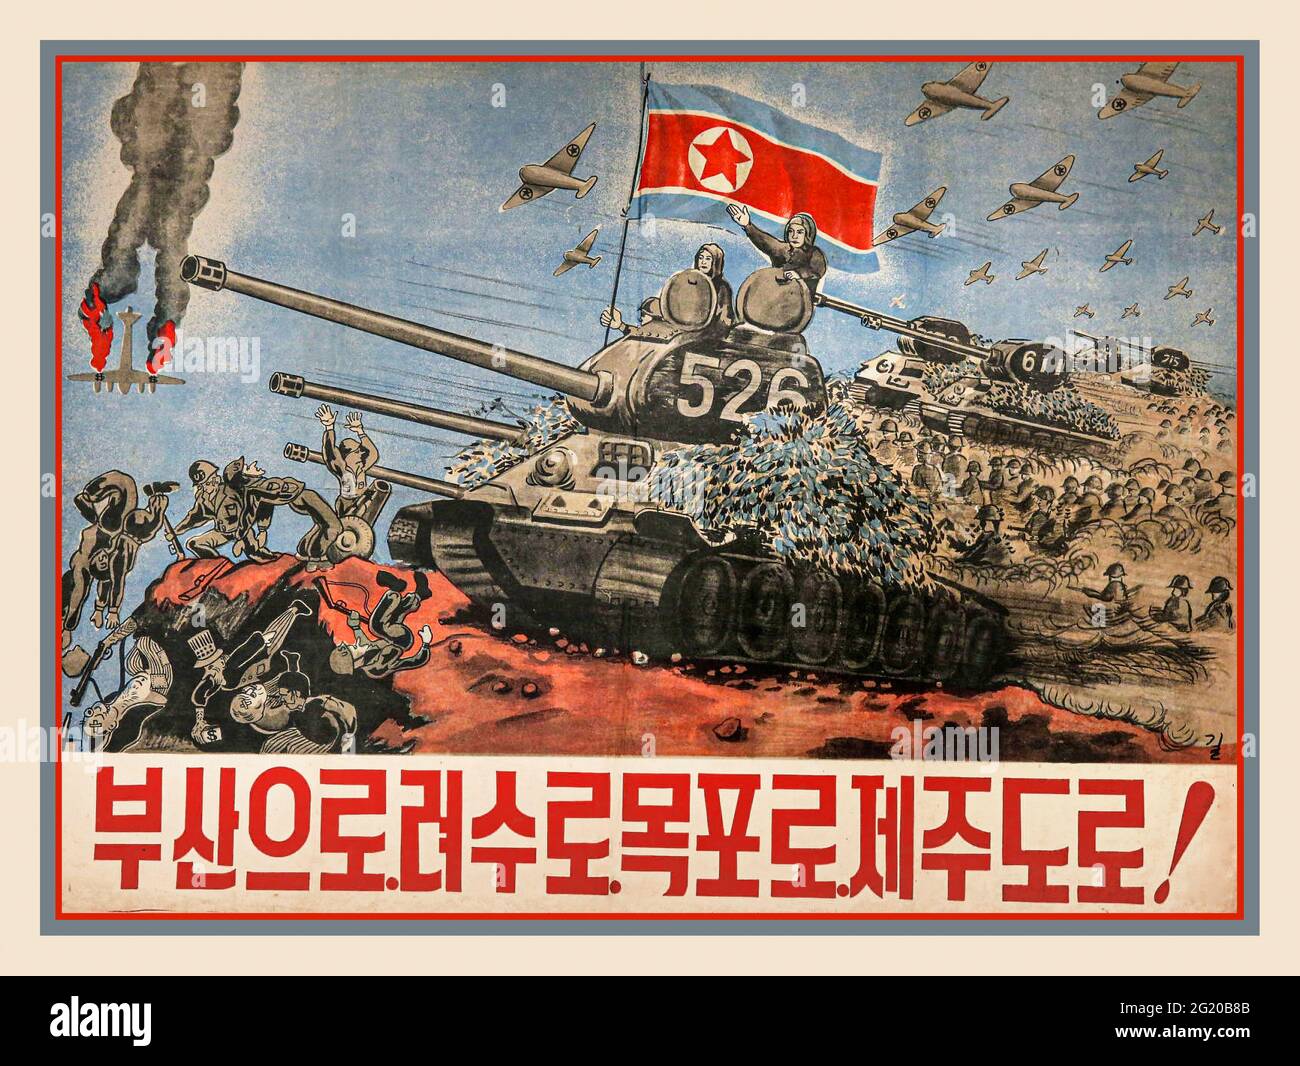 Il Poster di guerra Propaganda degli anni '50 della Corea del Nord batte gli eserciti imperialisti della guerra americana della penisola coreana del 1950-1953. La guerra coreana è stata una guerra tra la Corea del Nord, con il sostegno militare della Cina e dell'Unione Sovietica, e la Corea del Sud, sostenuta da personale degli Stati Uniti delle Nazioni Unite. La guerra è iniziata il 25 giugno 1950 quando la Corea del Nord ha invaso la Corea del Sud a seguito di scontri lungo il confine e di insurrezioni nel sud. Foto Stock